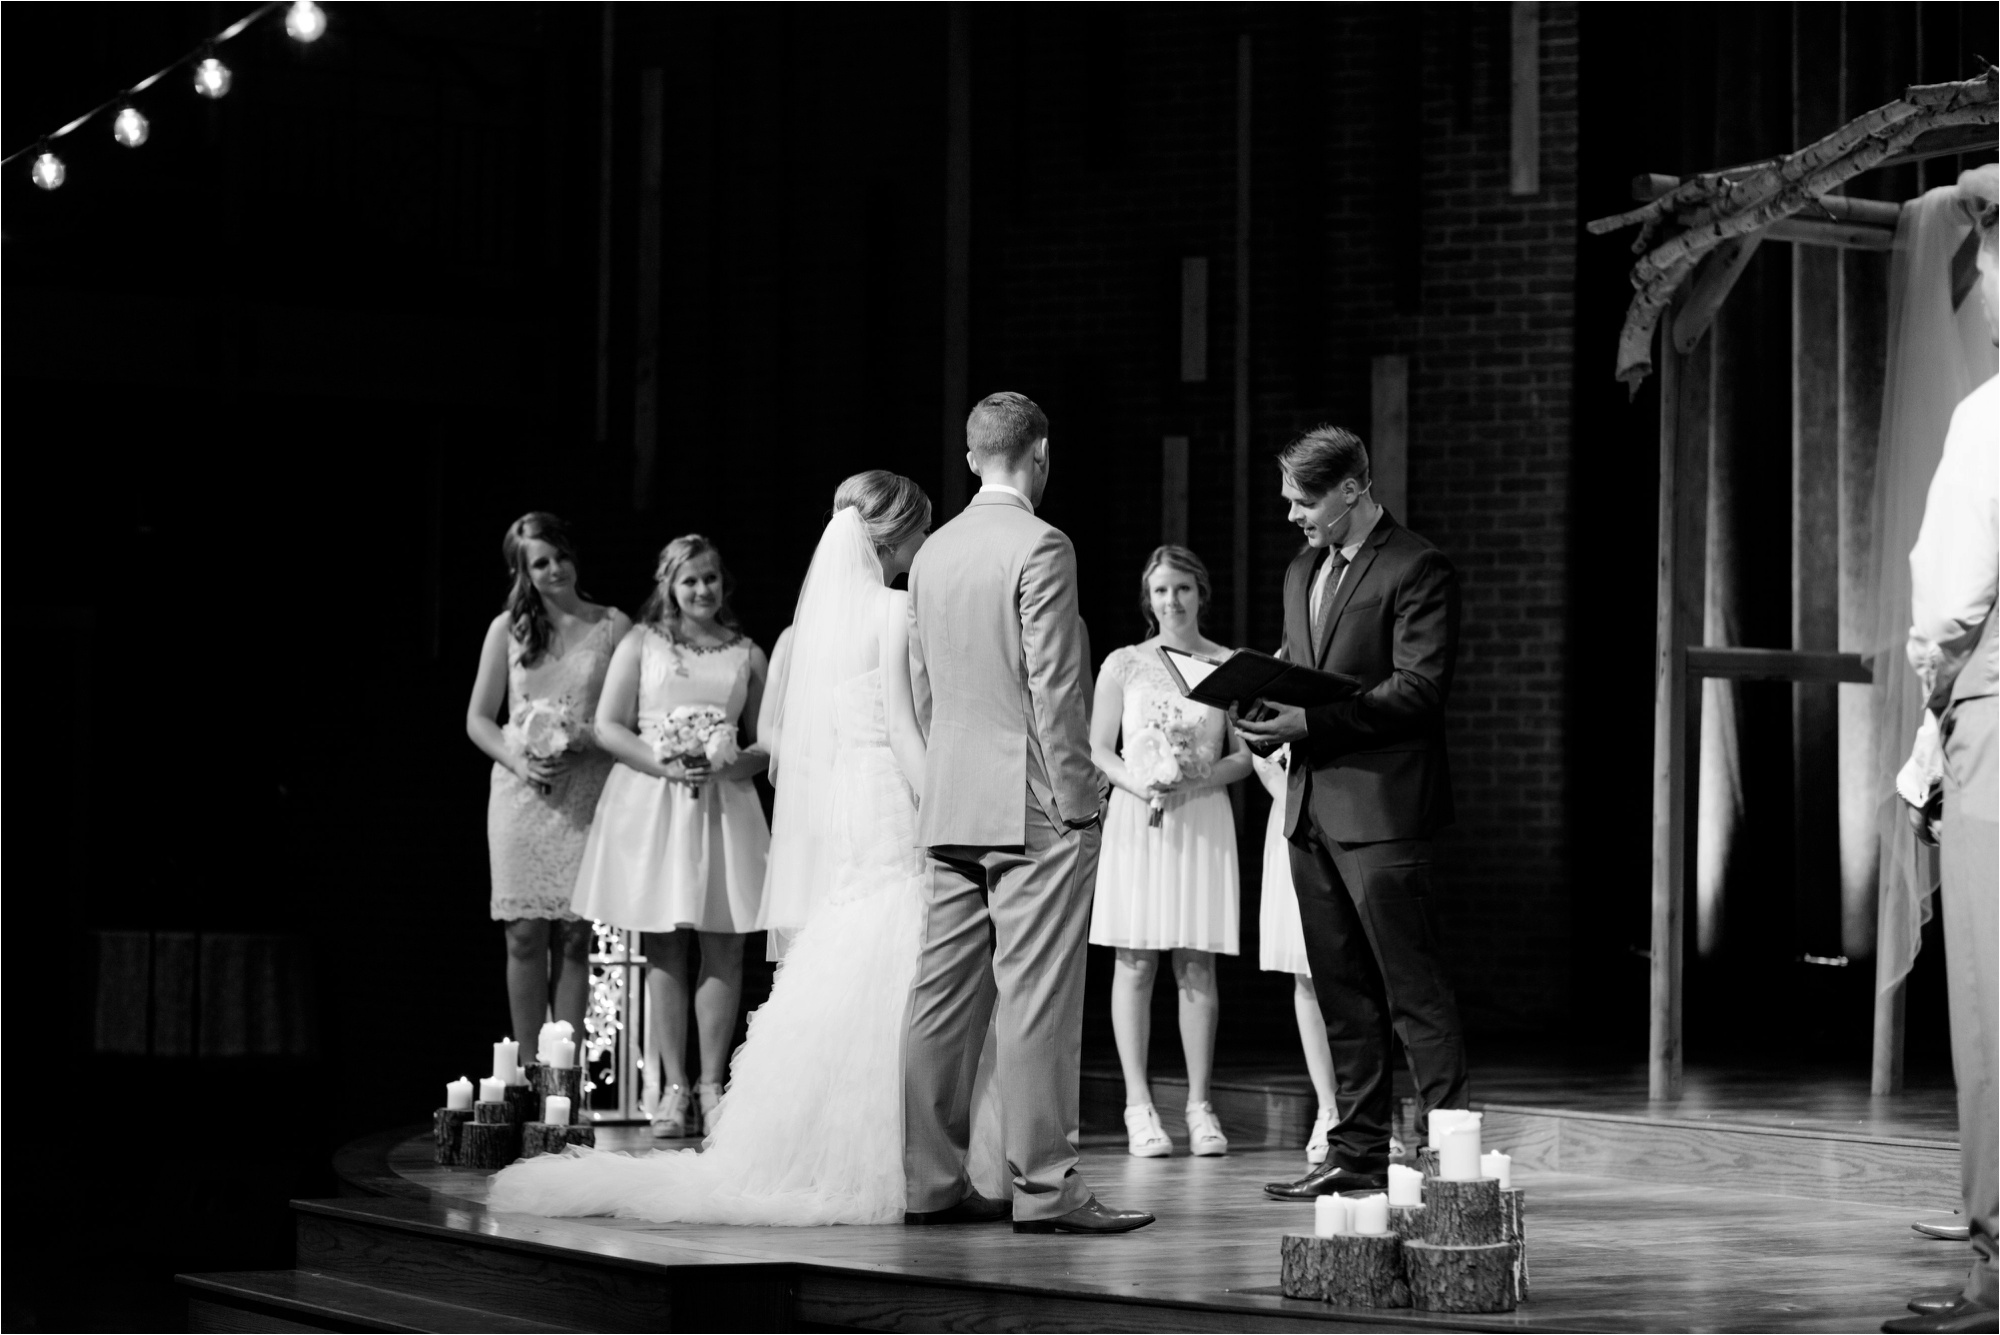 Caitlin and Luke Photography, Bloomington Normal Wedding Photographers, Illinois Wedding Photographers, Illinois Husband and Wife Wedding Photography Team_0307.jpg